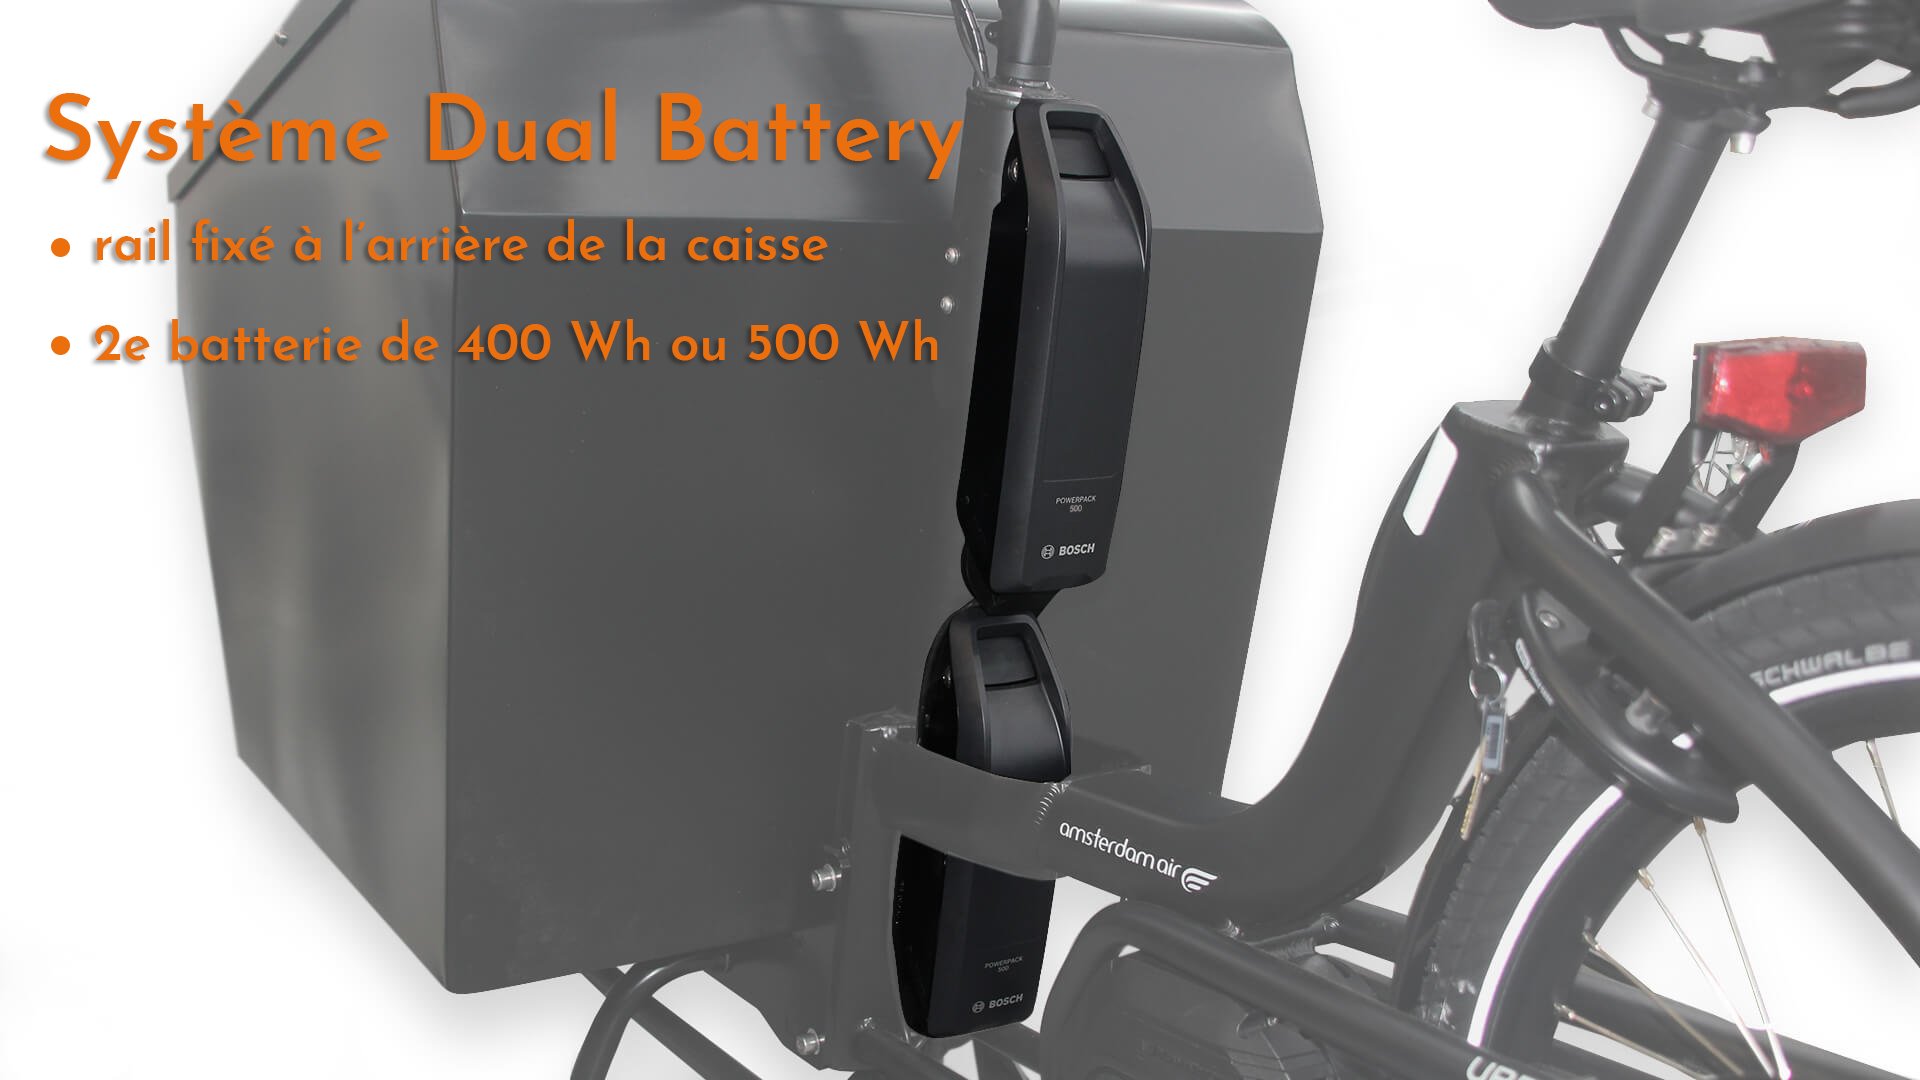 Système Dual Battery pour plus d'autonomie